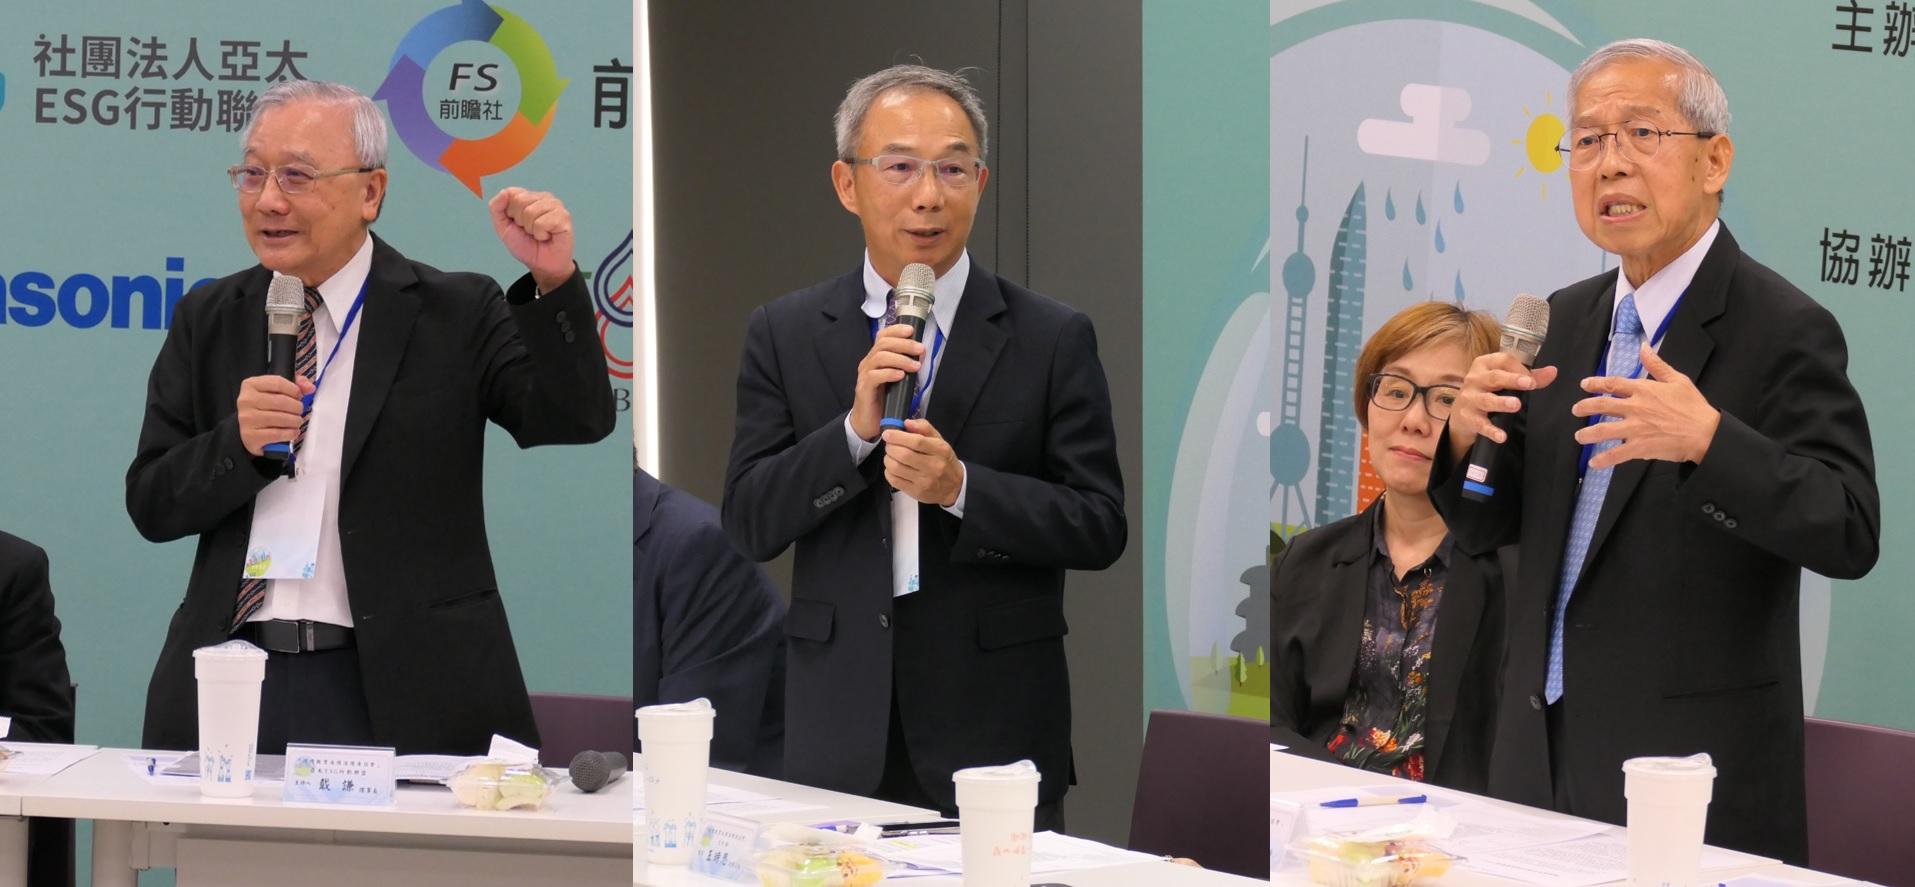 三位主持人(由左至右)亞太 ESG 行動聯盟理事長戴謙、崑山科技大榮講座教授林淵傳、前瞻社柯承恩社長